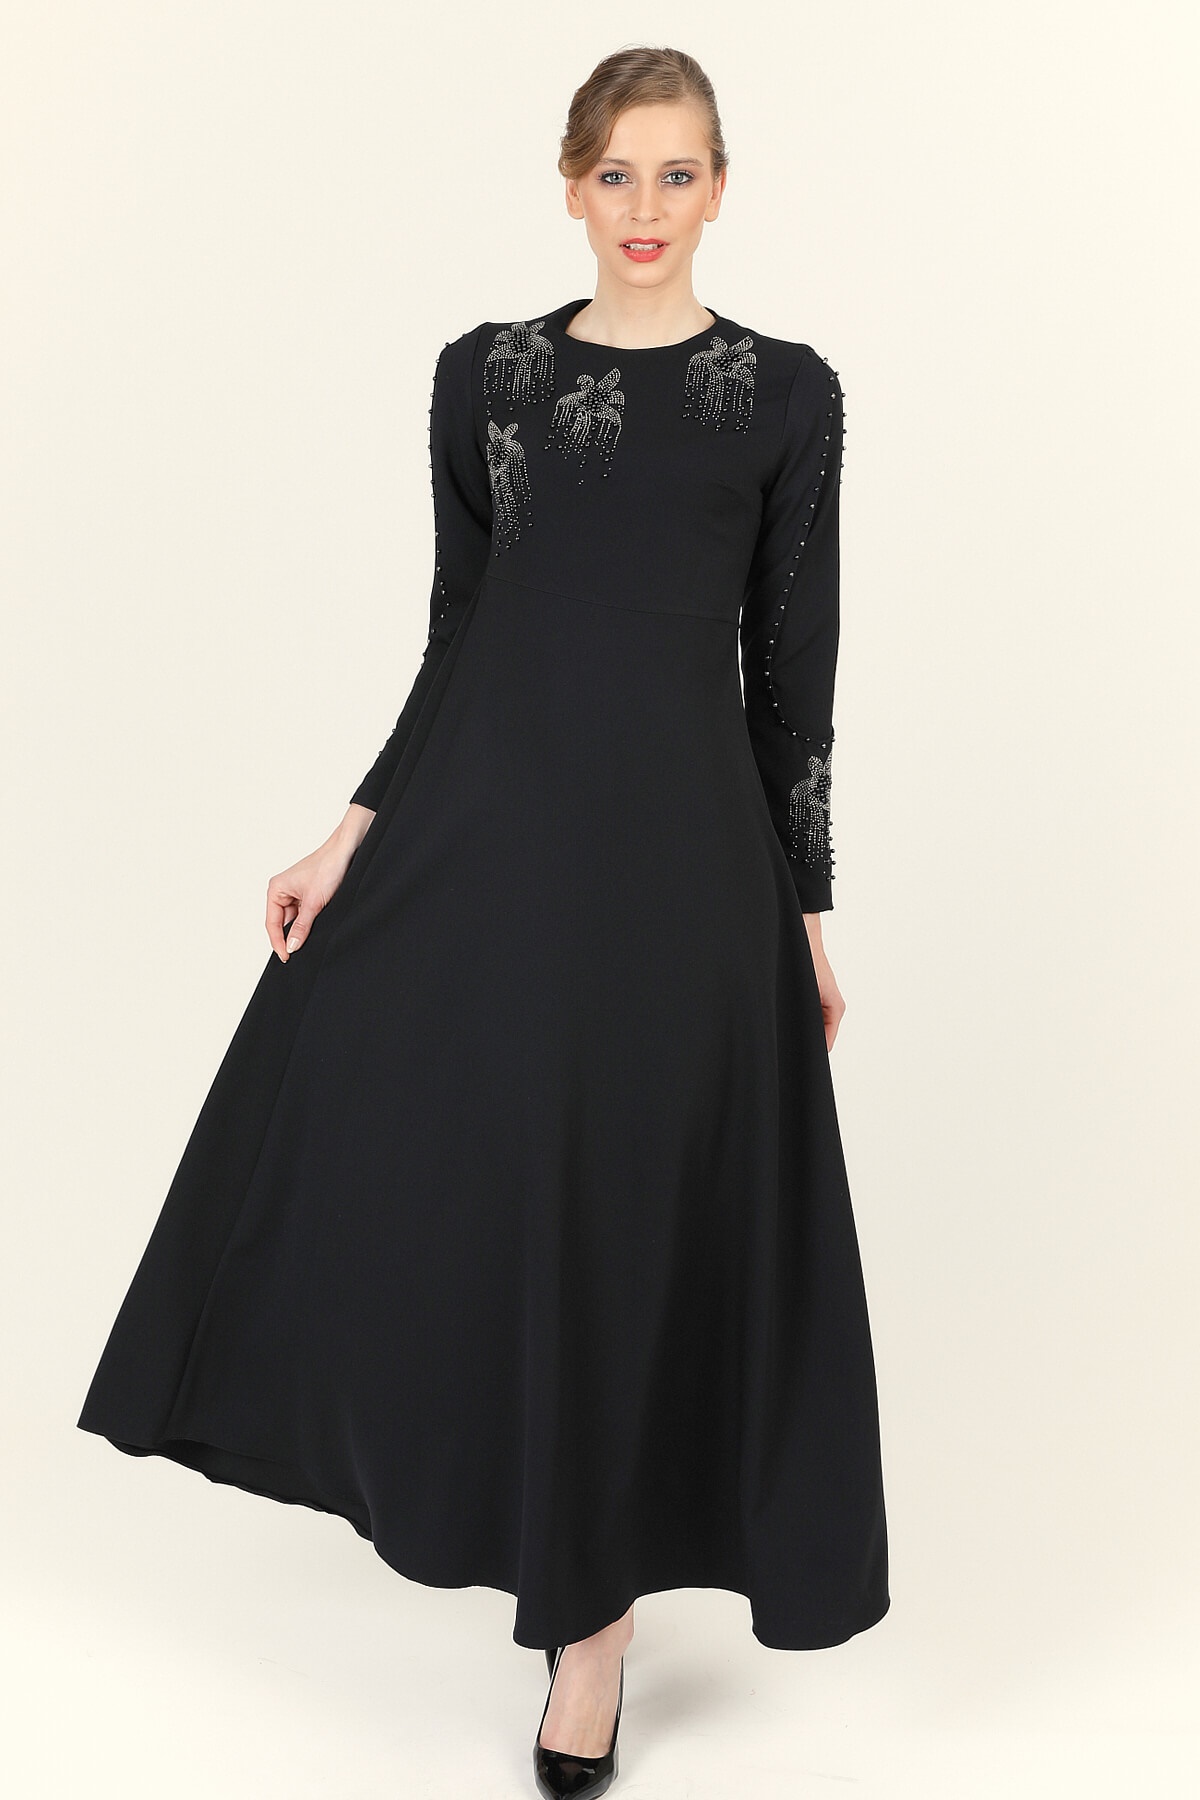 Boncuk Taş İşlemeli Elbise - Siyah - Tesettür Elbise